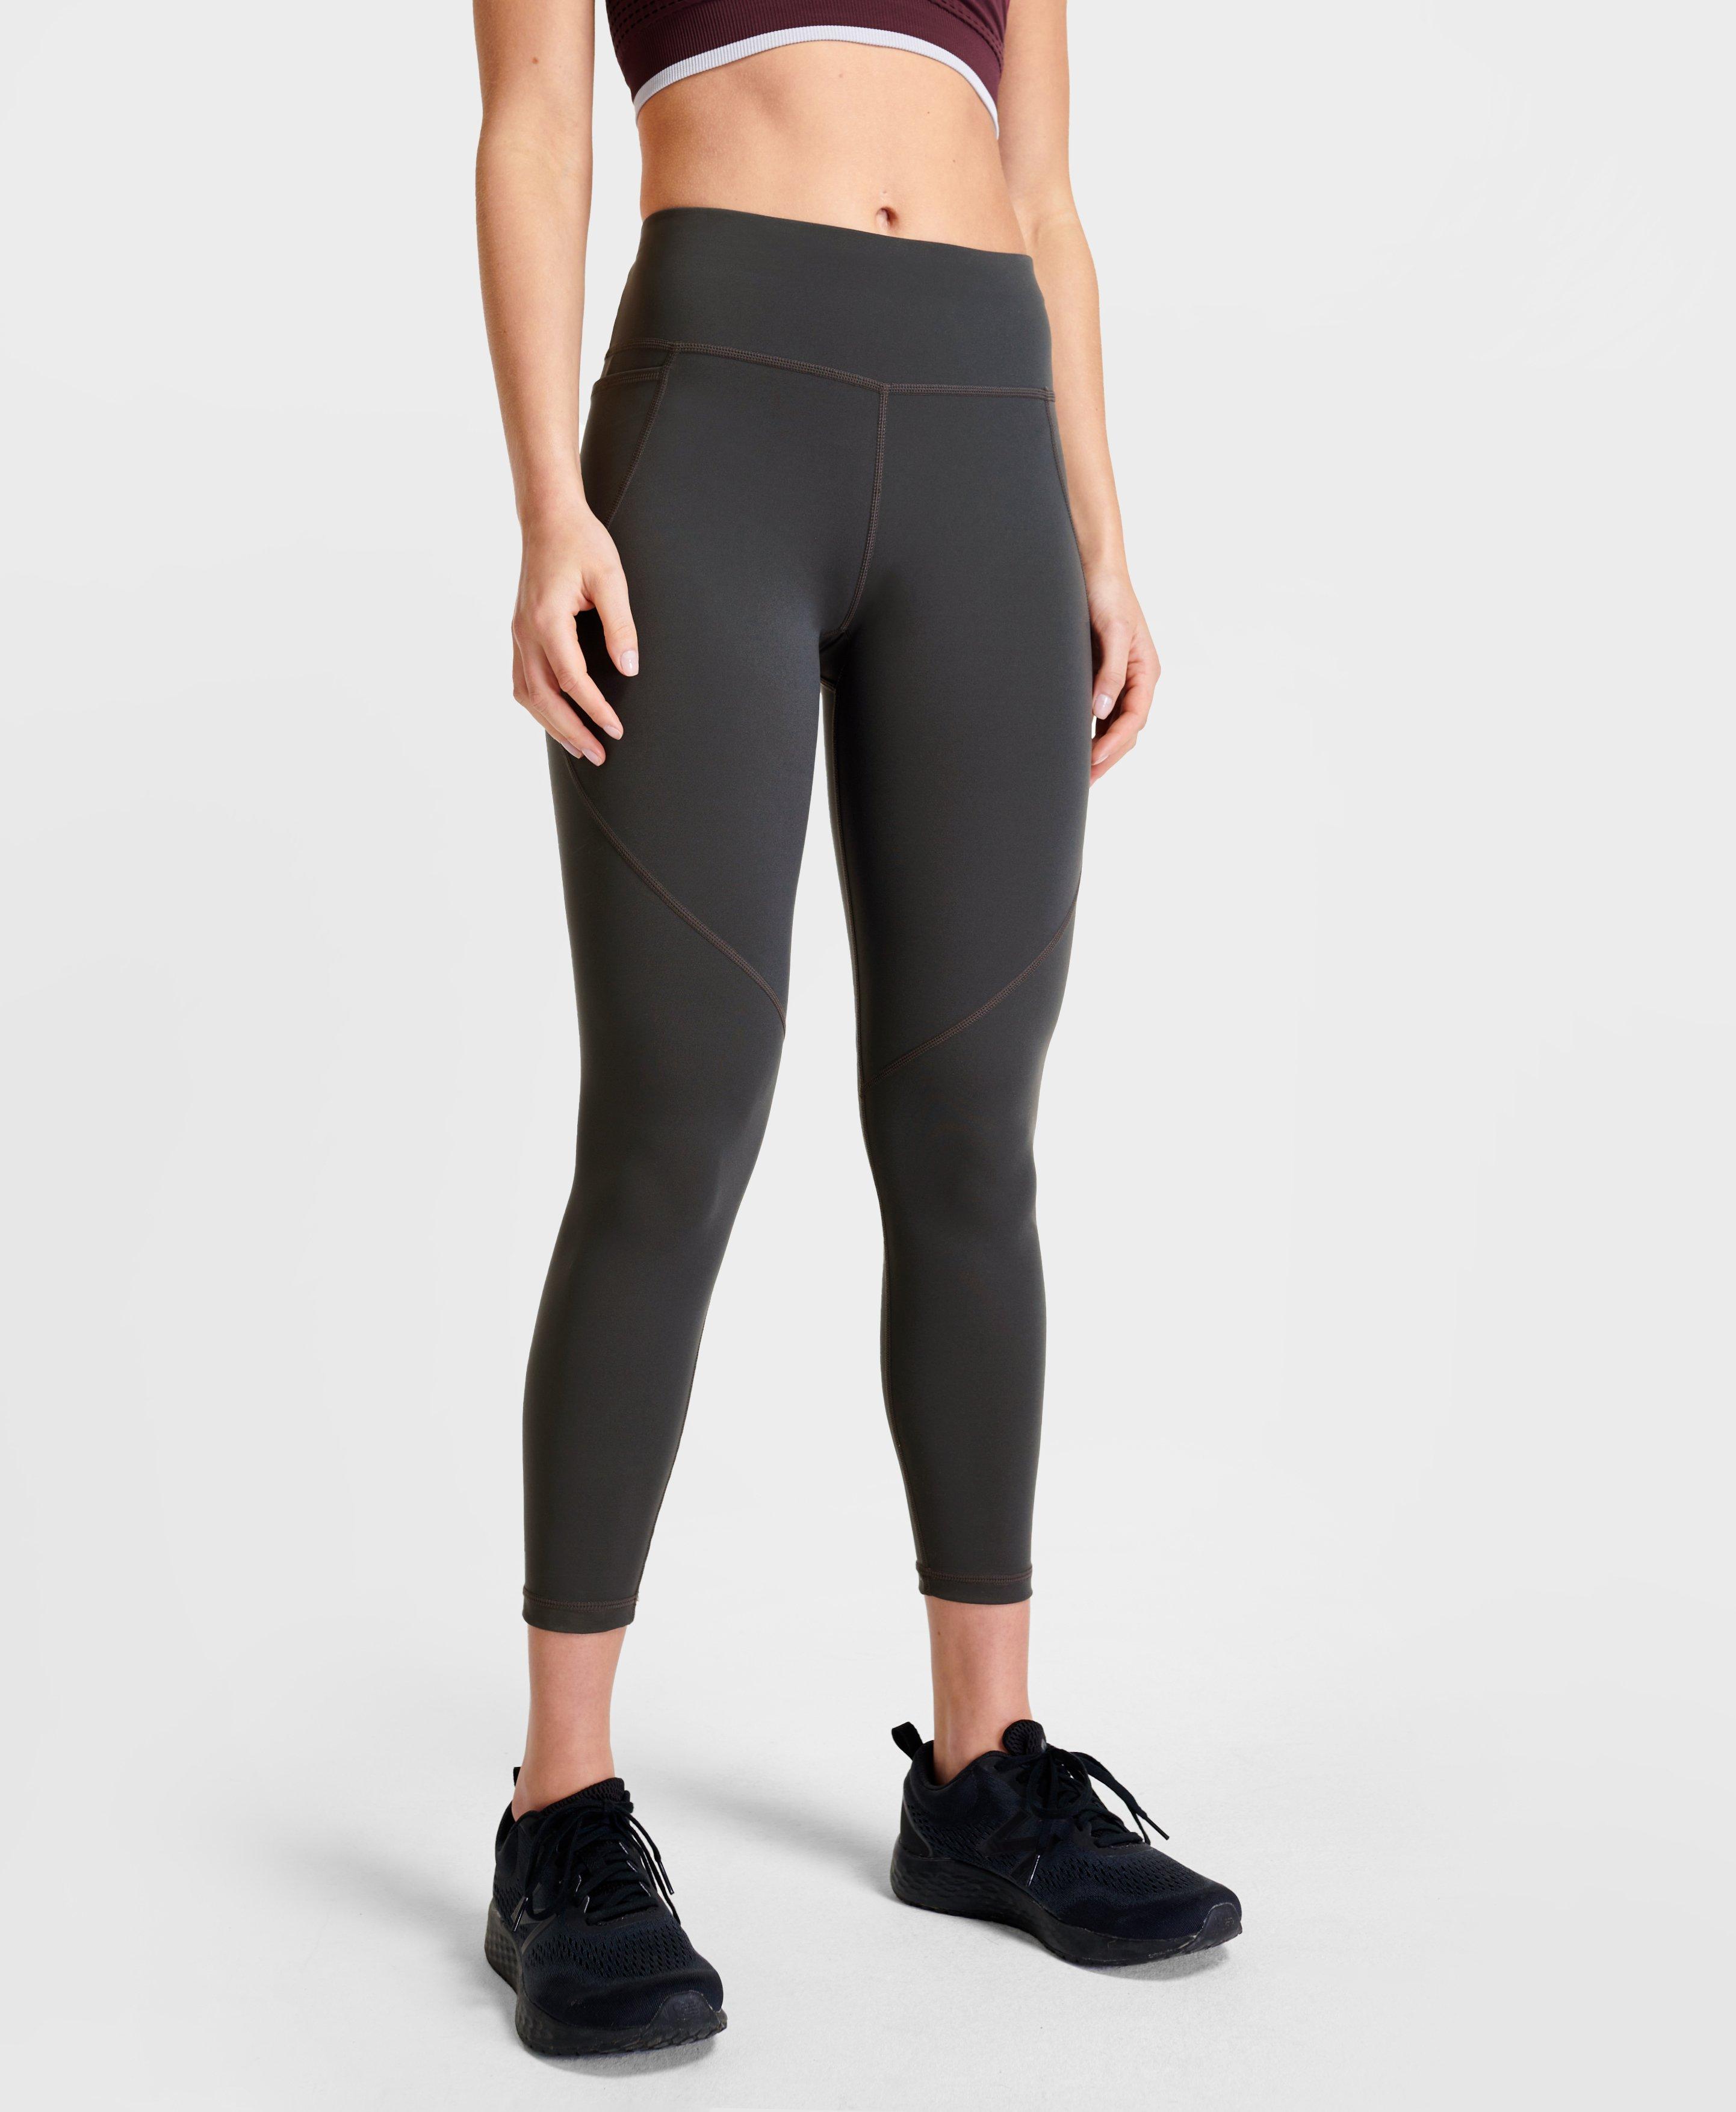 grey workout leggings